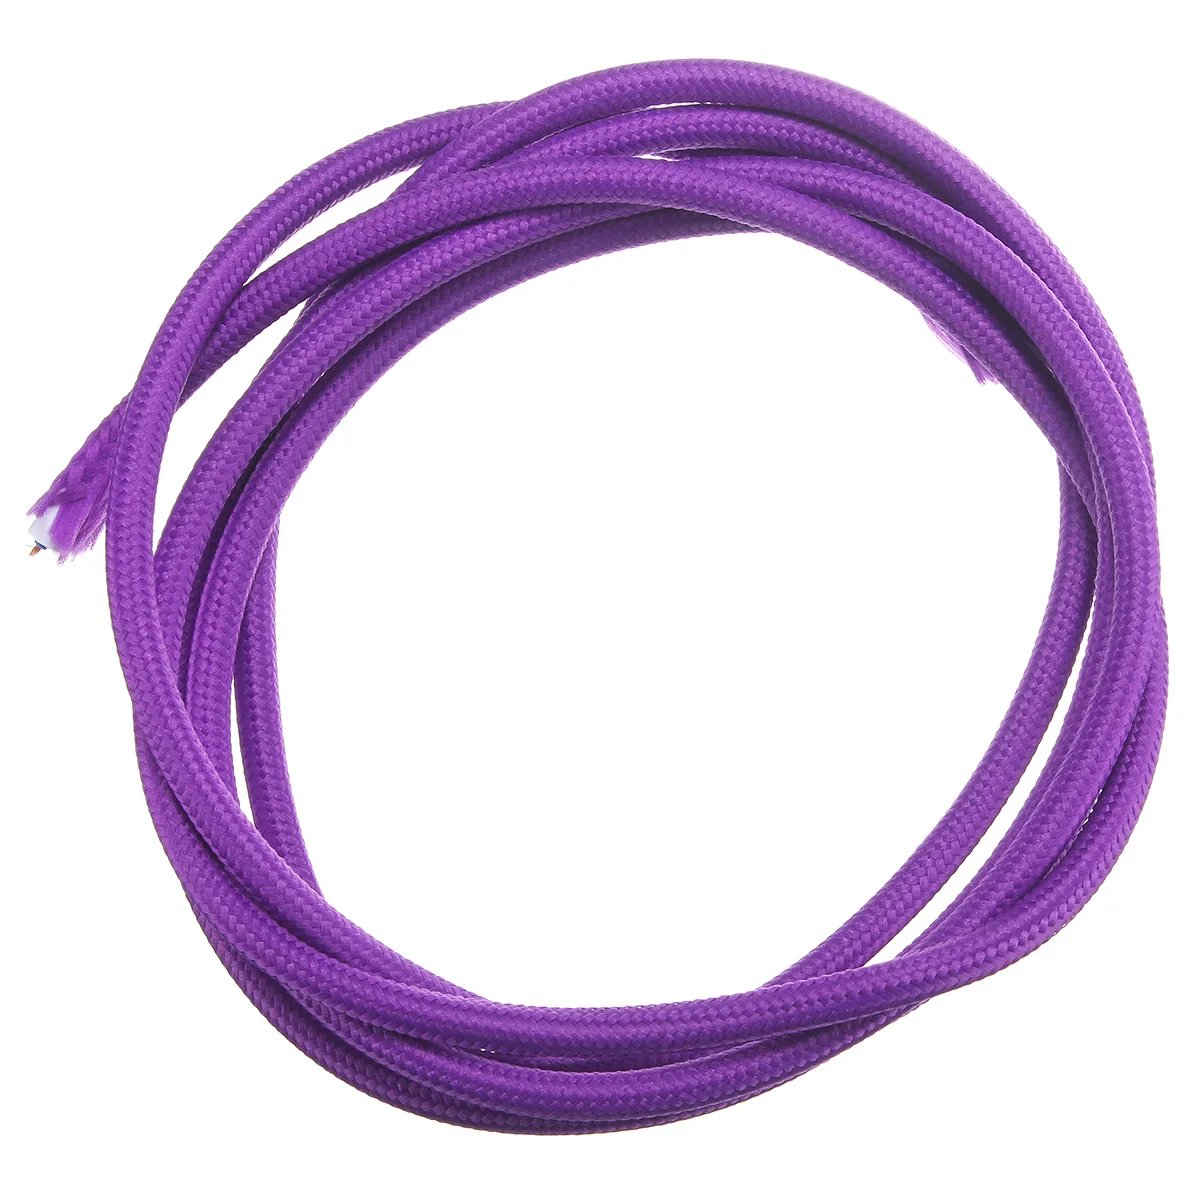 200 см 2 шнура Цвет Винтаж Твист Плетеный тканевый светильник кабель ткань электрический провод для люстры кулон провода ламп - Цвет: Фиолетовый